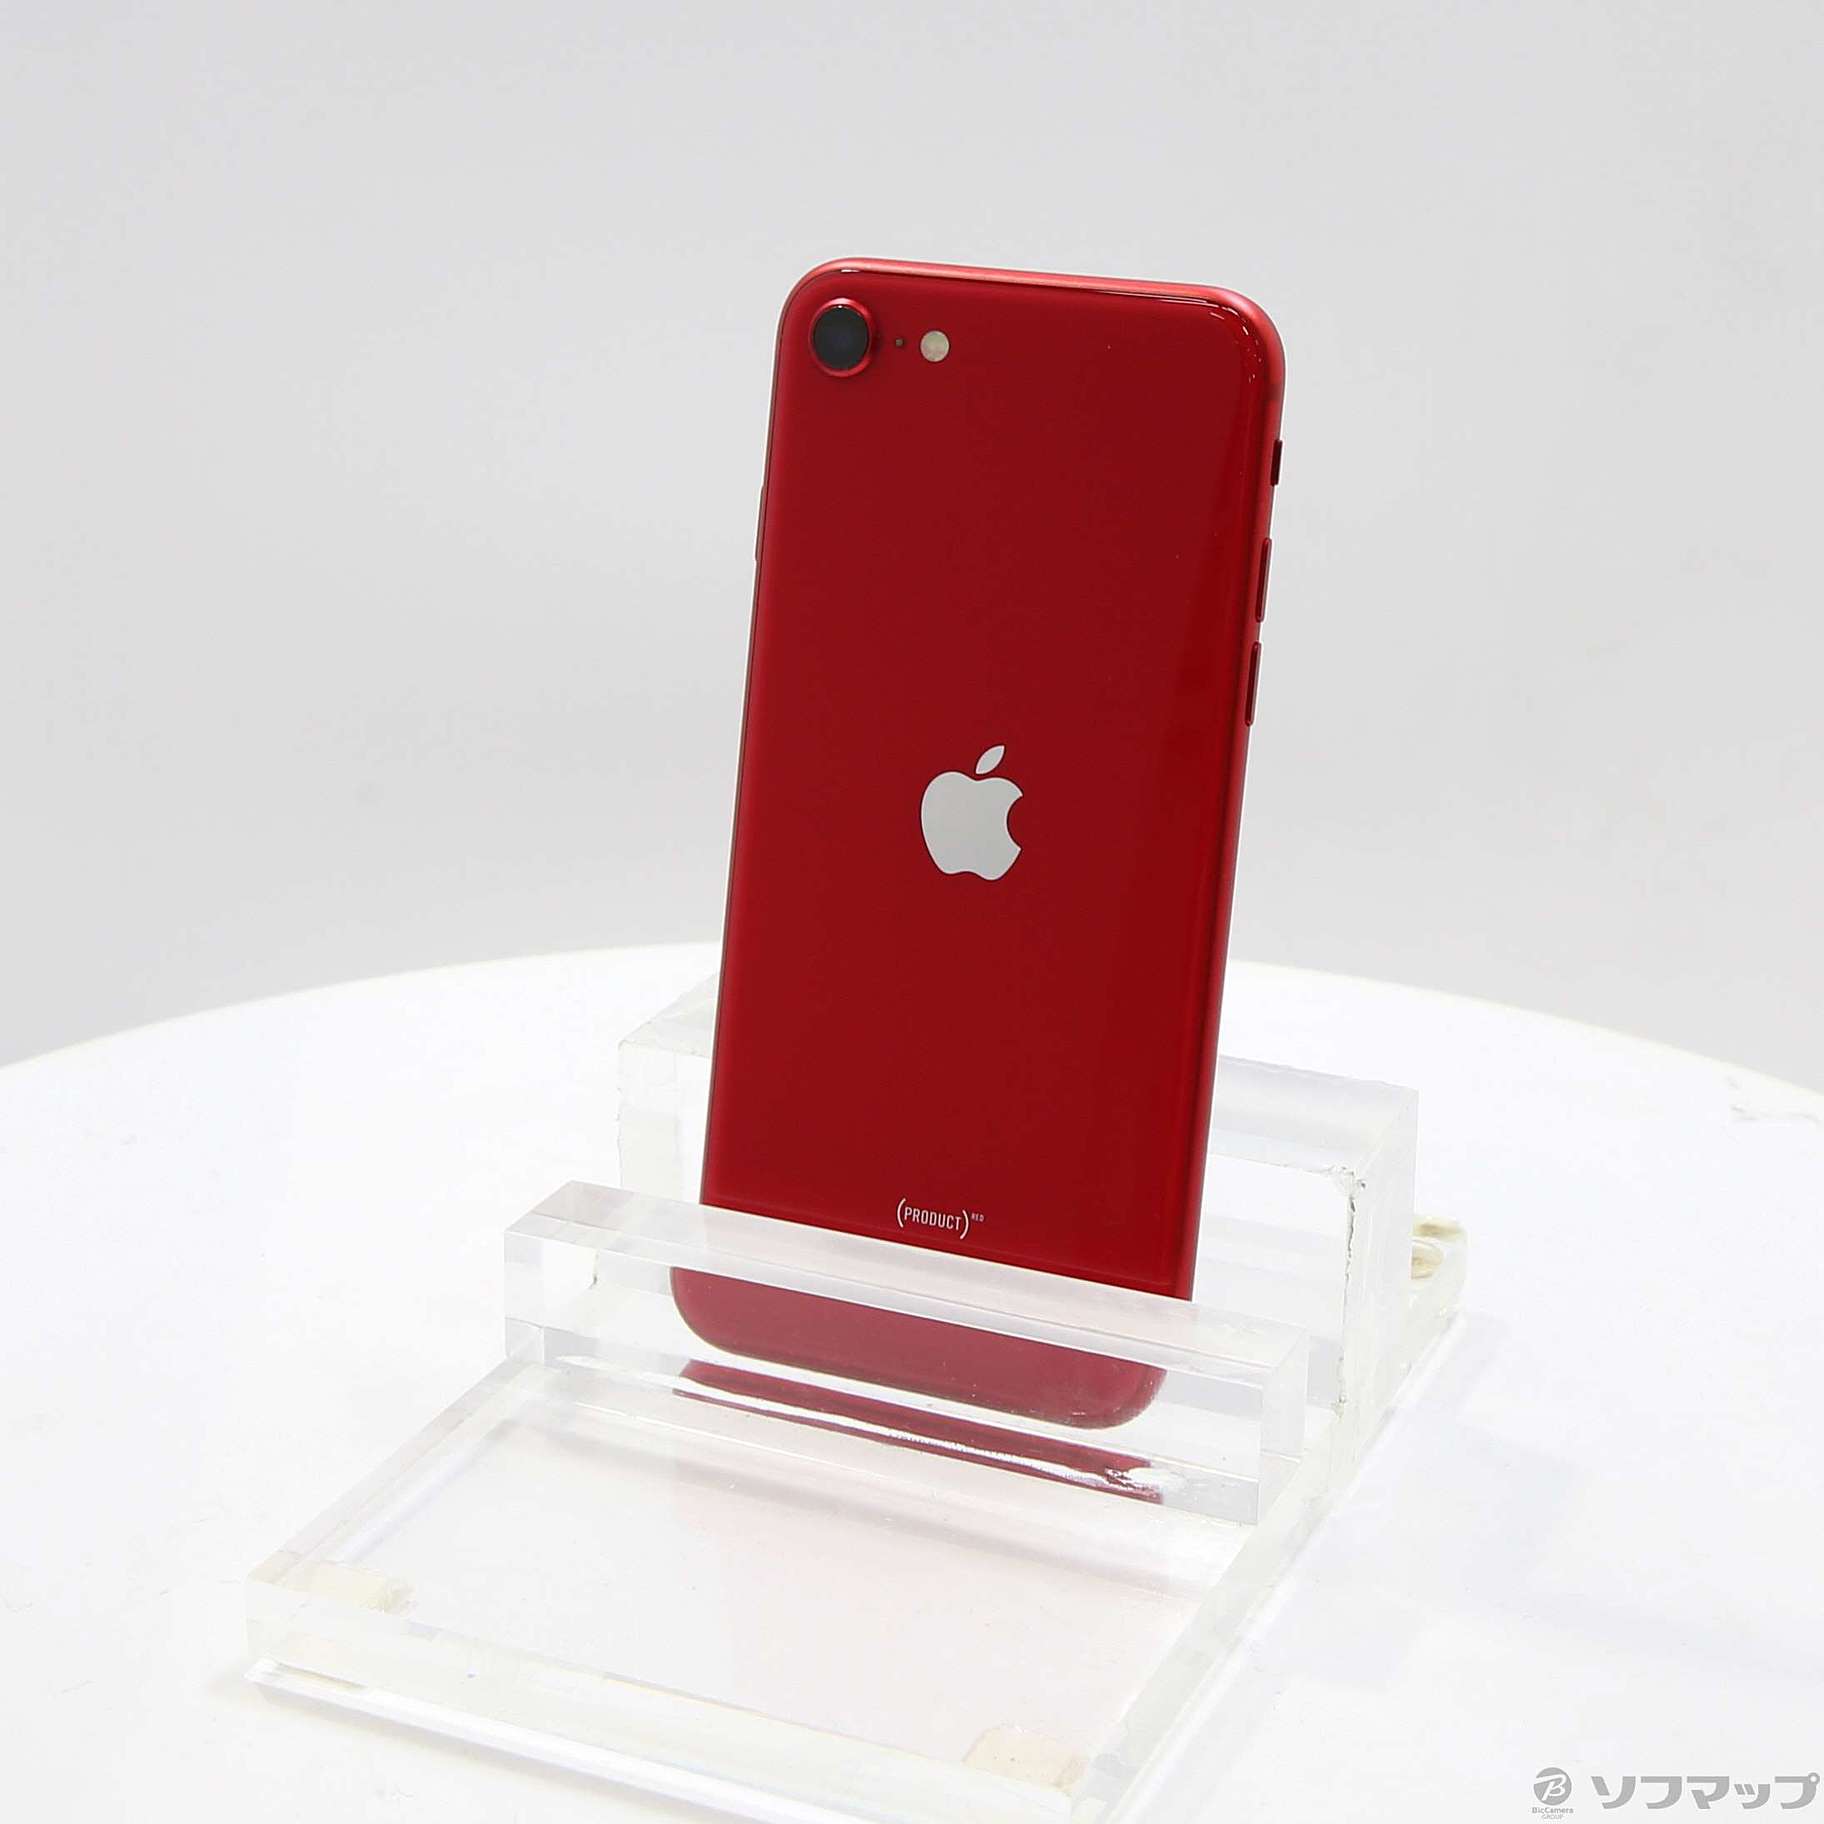 iPhone SE 第二世代 64GB SIMフリー レッド格安良品 - スマートフォン本体